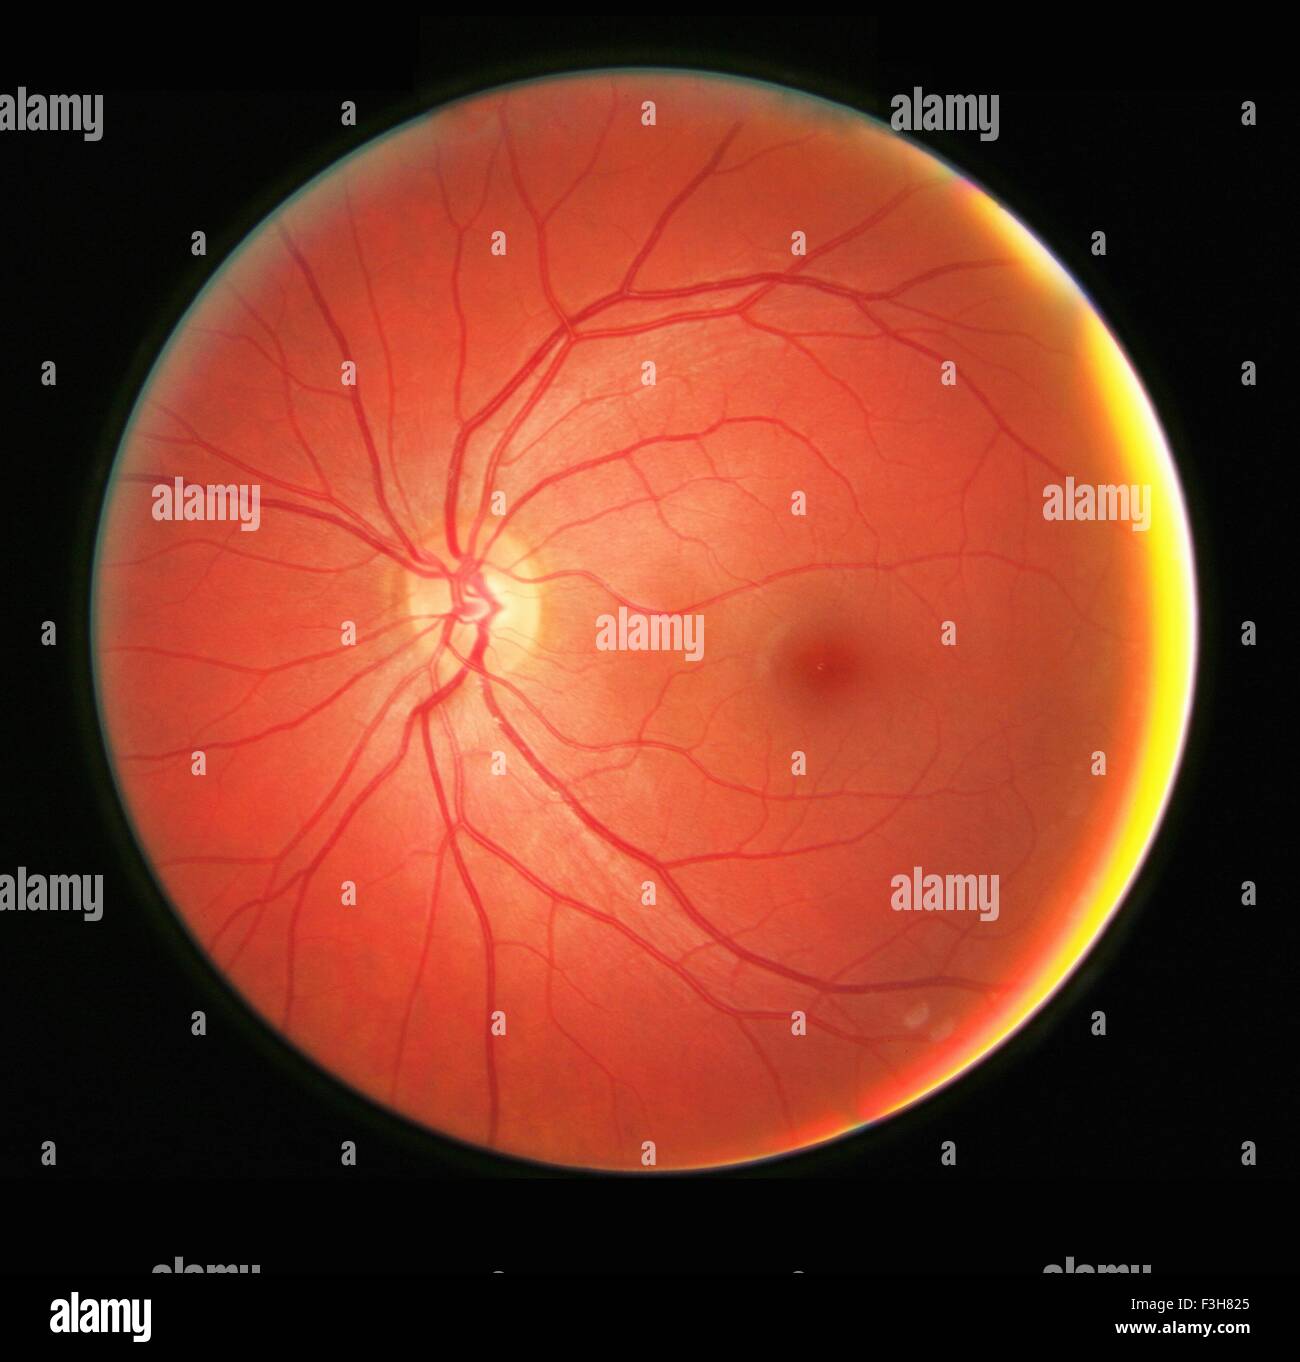 Fundus-Fotografie des linken Auges, zeigt der Netzhaut, Makula, Fovea und verwandte Strukturen Stockfoto